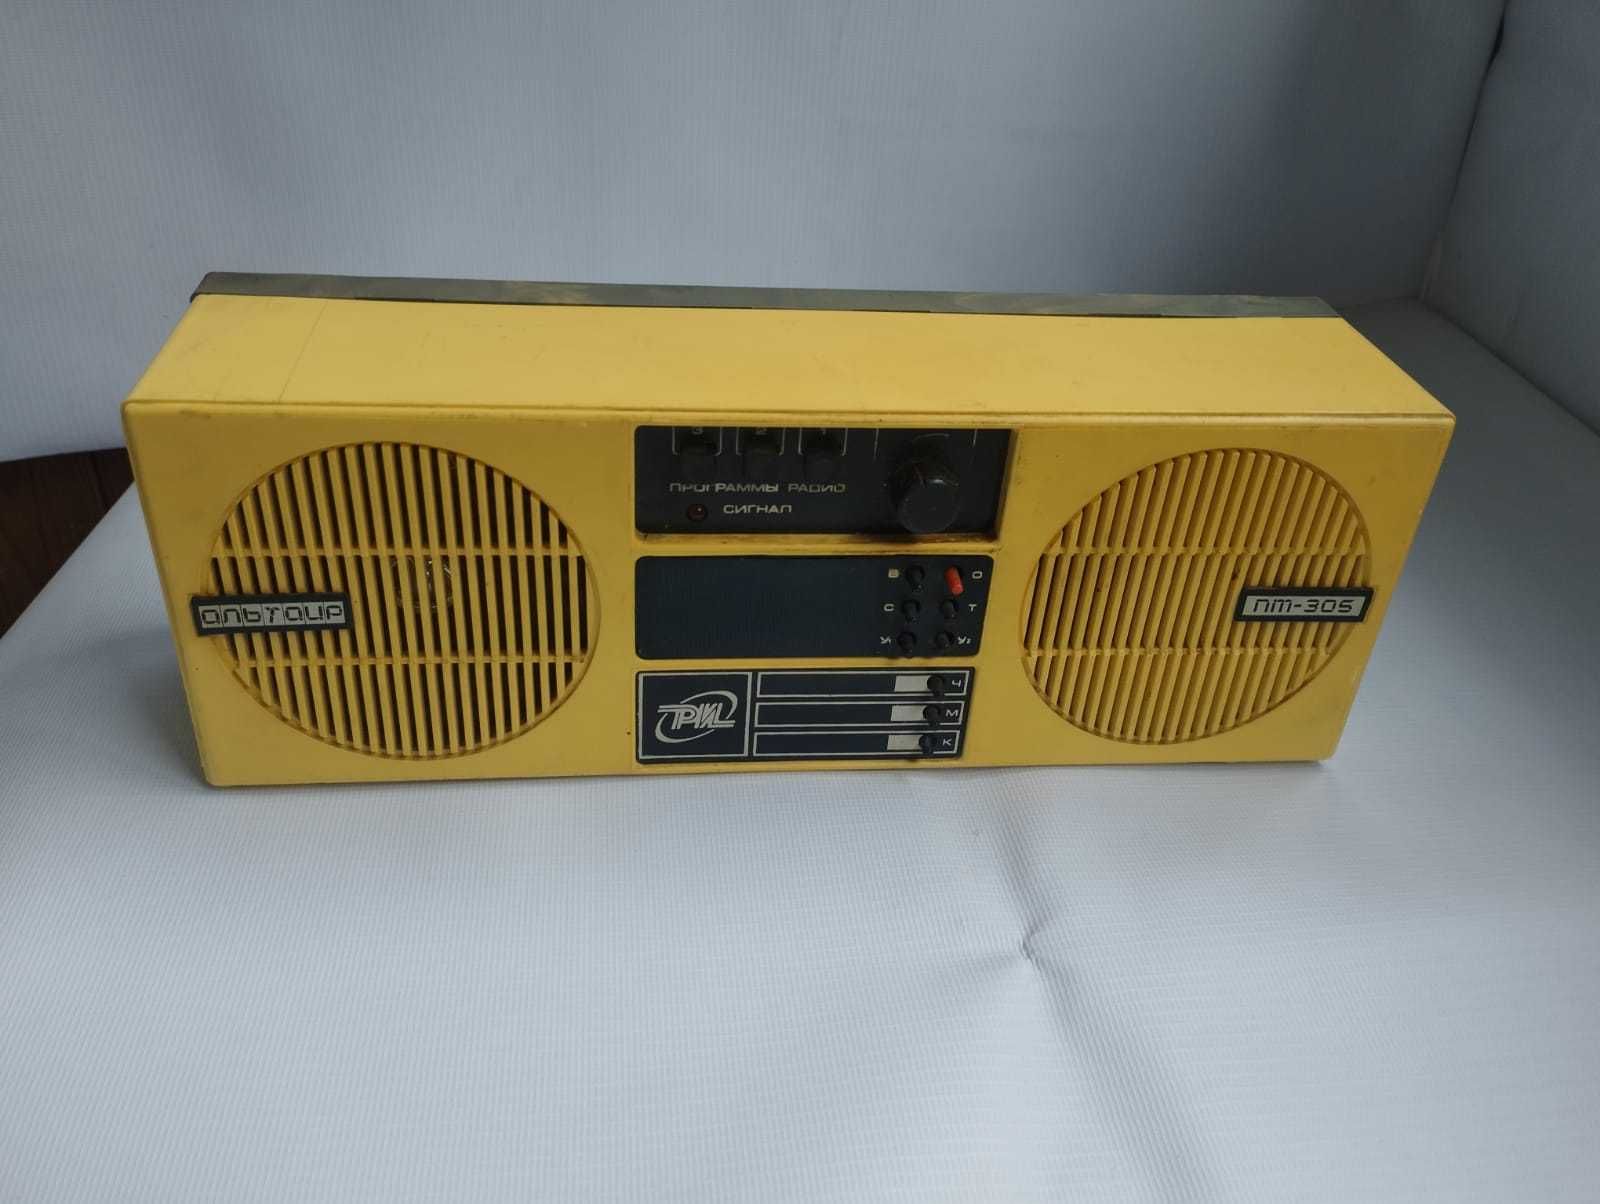 Радиоприемник трехпрограмный Альтаир ПТ-305 (1994 г.) c радиоточкой.